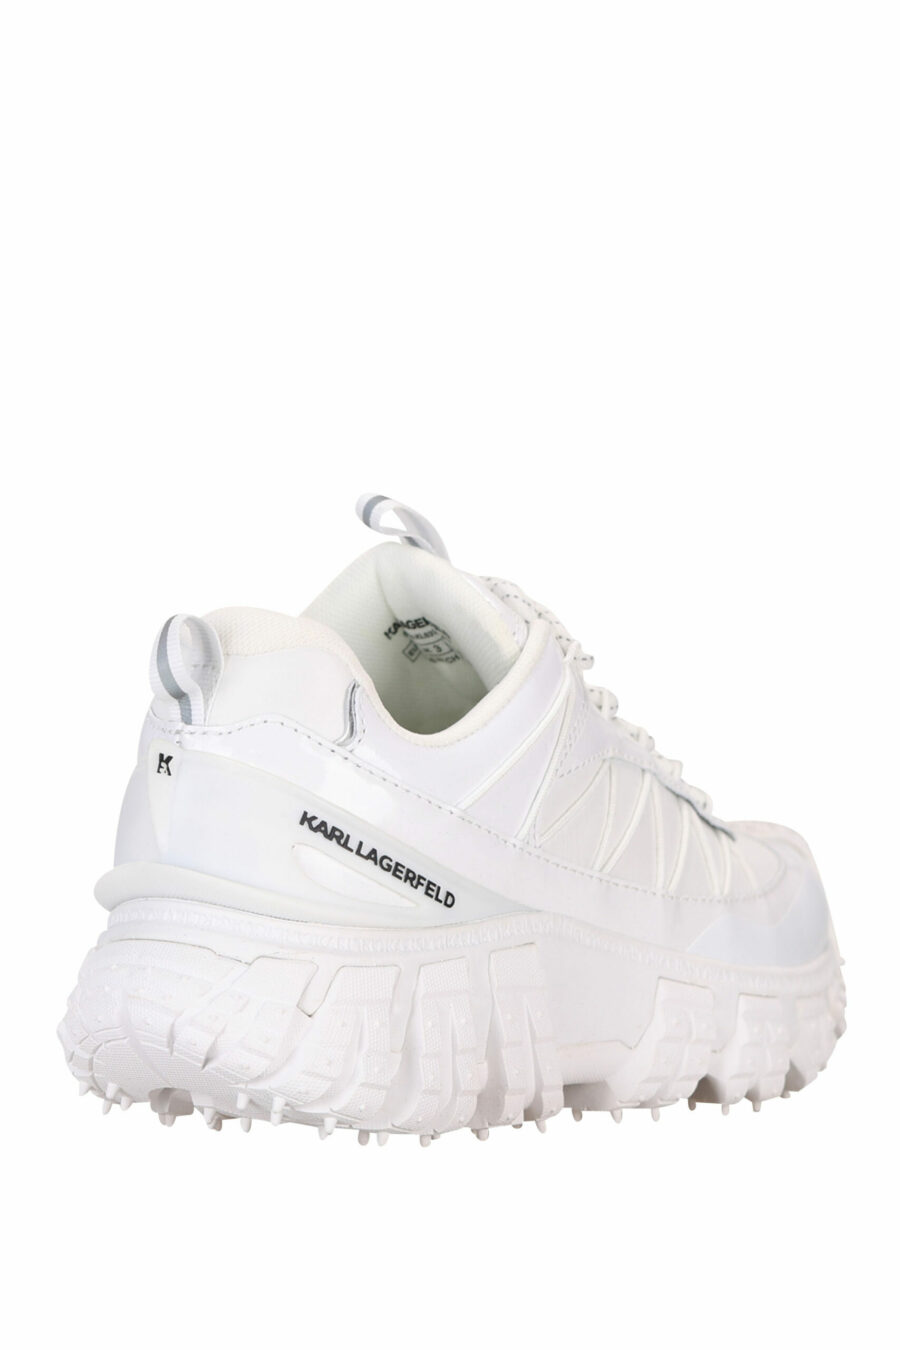 Zapatillas blancas con suela gruesa y minilogo - 5059529319099 1 scaled